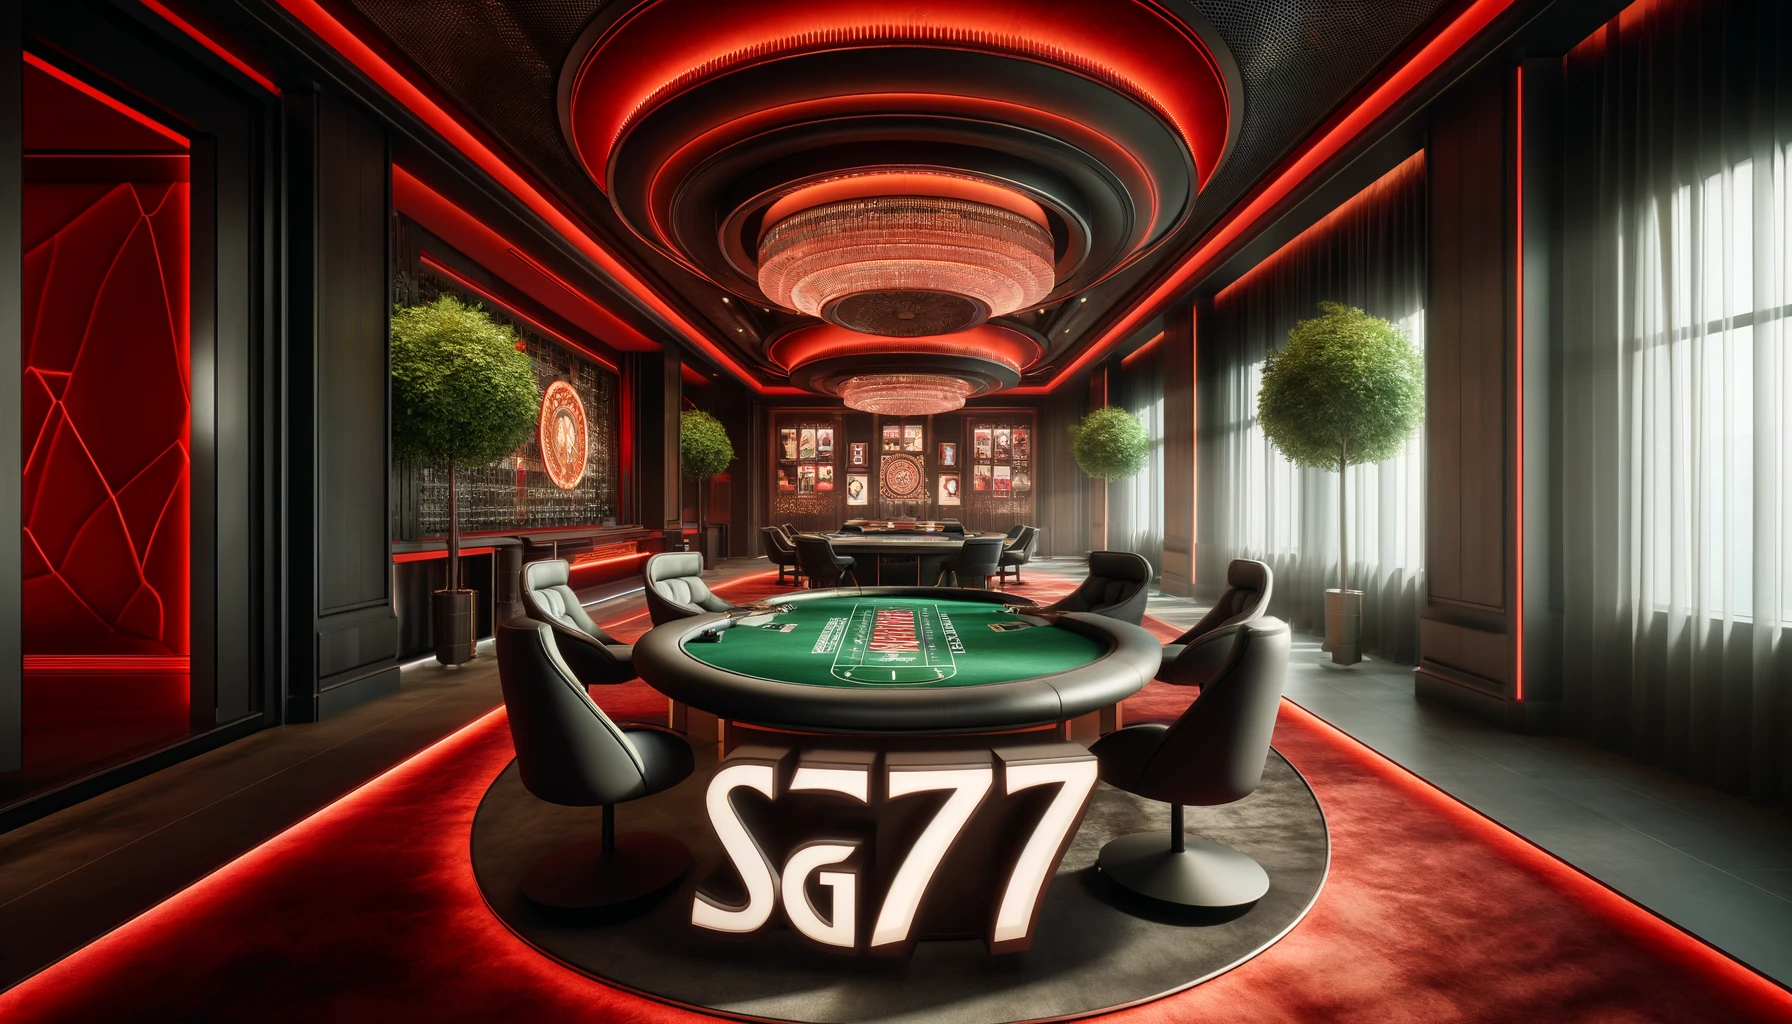 Các trò chơi tại nhà cái casino SG777